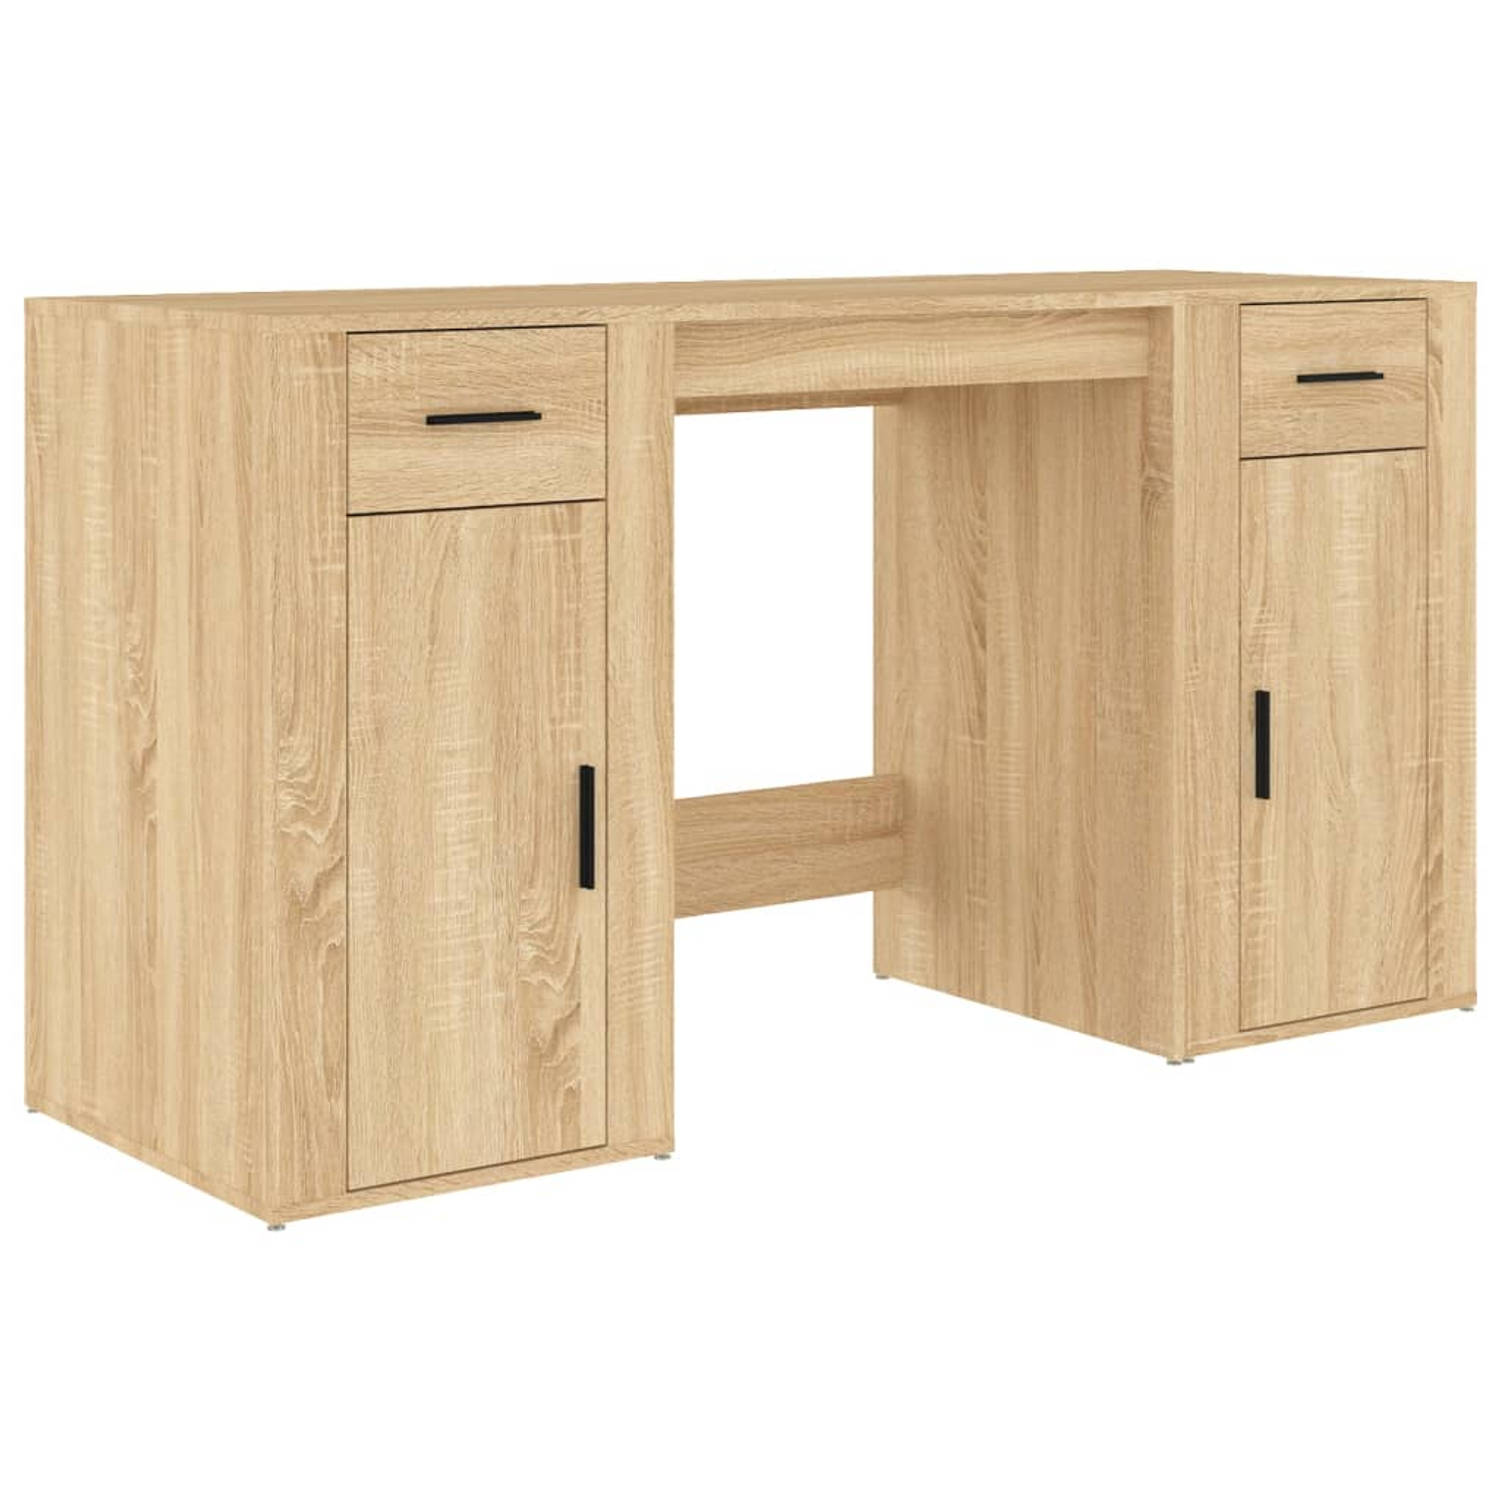 The Living Store Bureau en Kast - Sonoma Eiken - 100x49x75 cm - Duurzaam bewerkt hout - Met opbergruimte - Praktische deur - Display functie